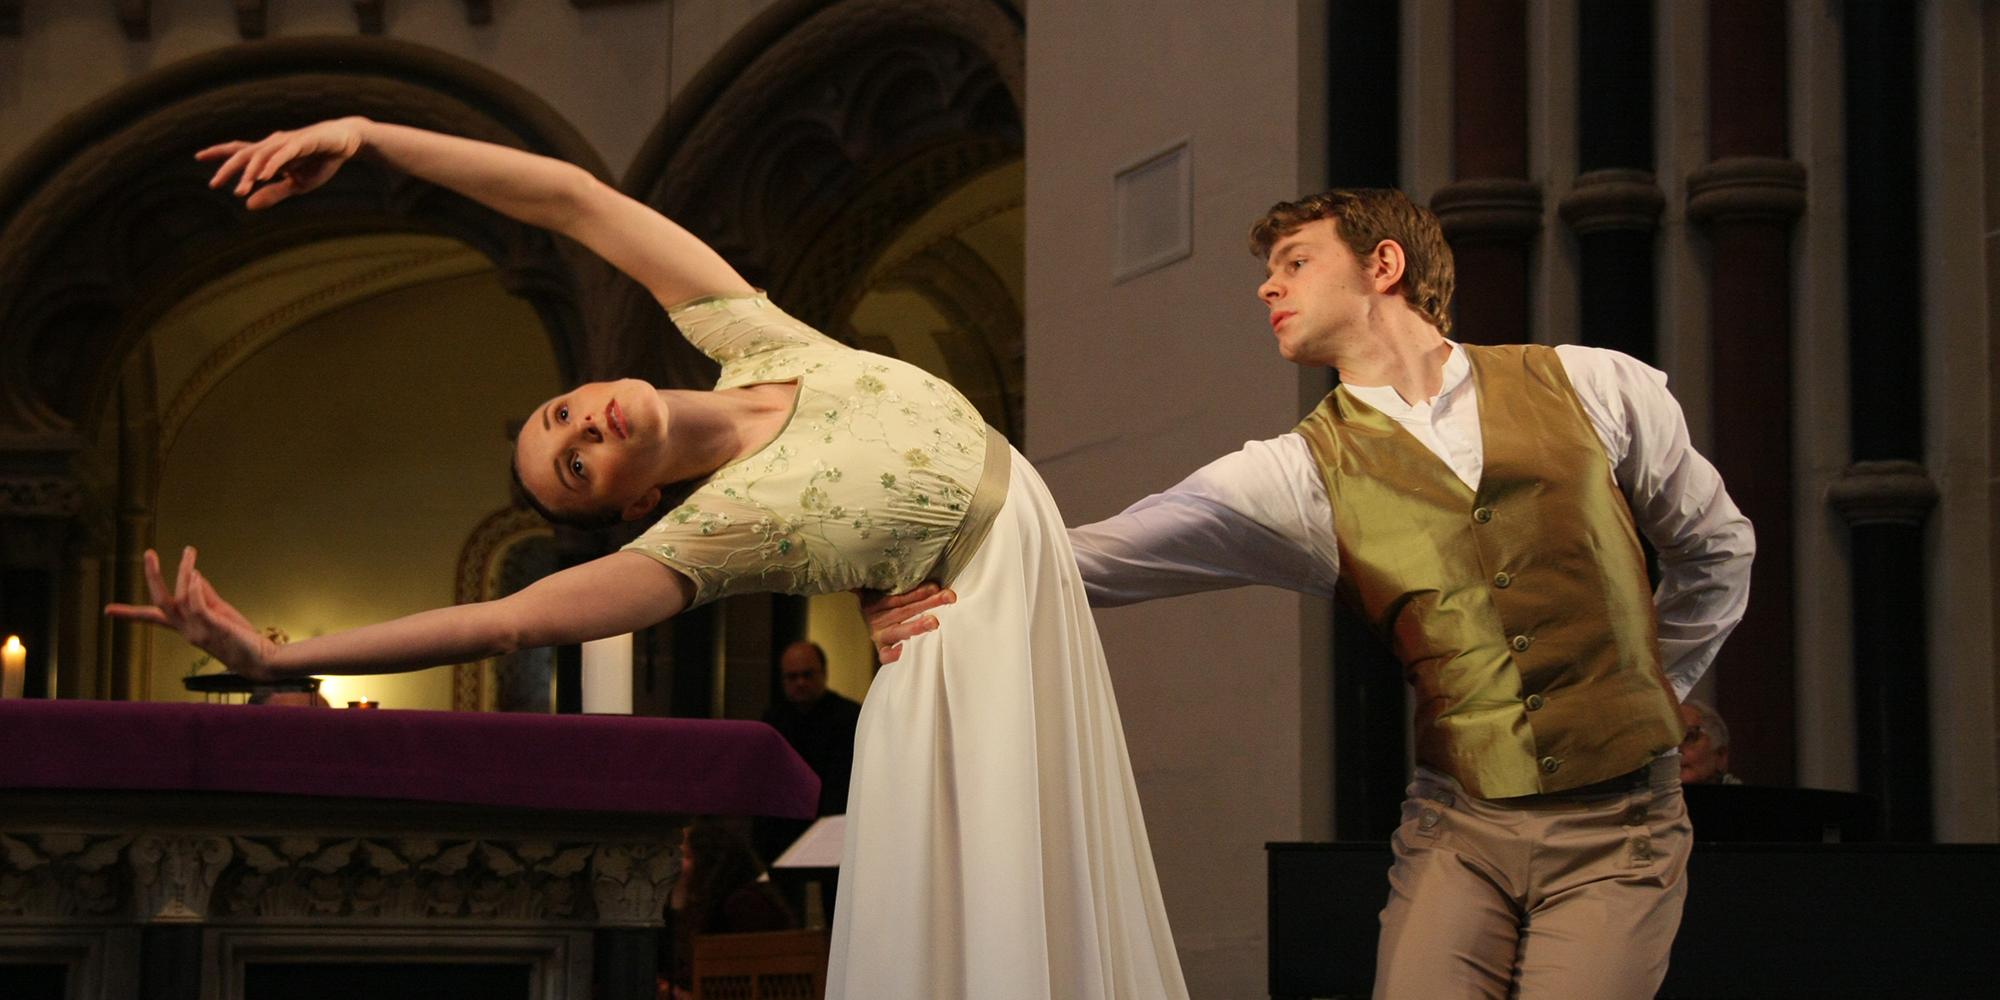 Meea Laitinen und Nathaniel Yelton boten einen Tanz aus dem Ballettabend 'Tausend Grüße' zu Musik von Robert Schumann dar.